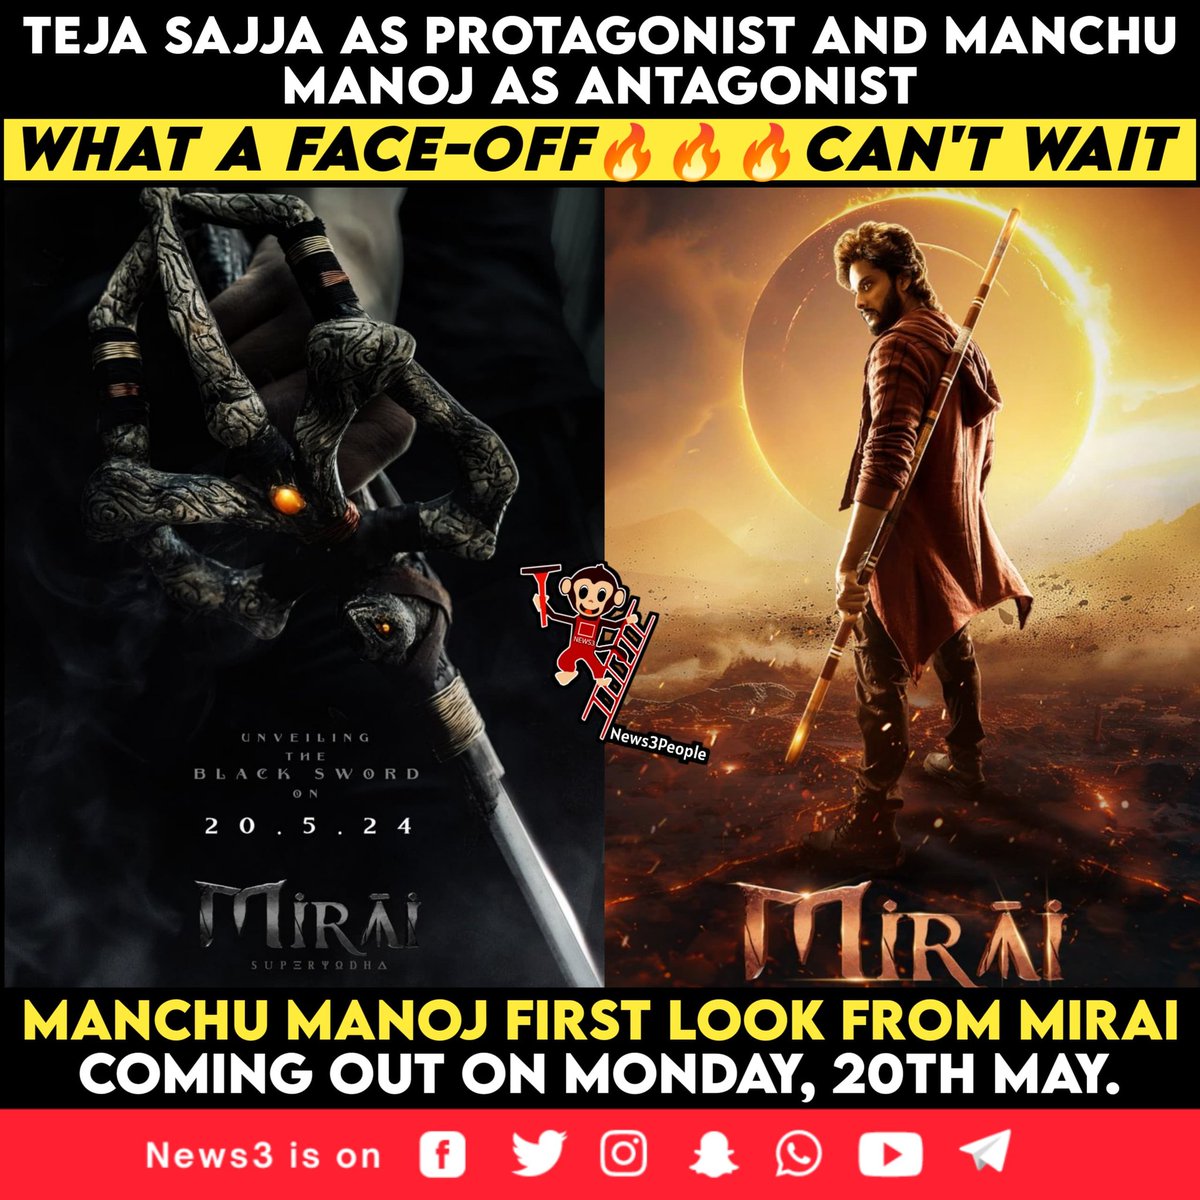 #ManchuManoj as Antagonist in #Mirai Movie 💥💥💥

#TejaSajja